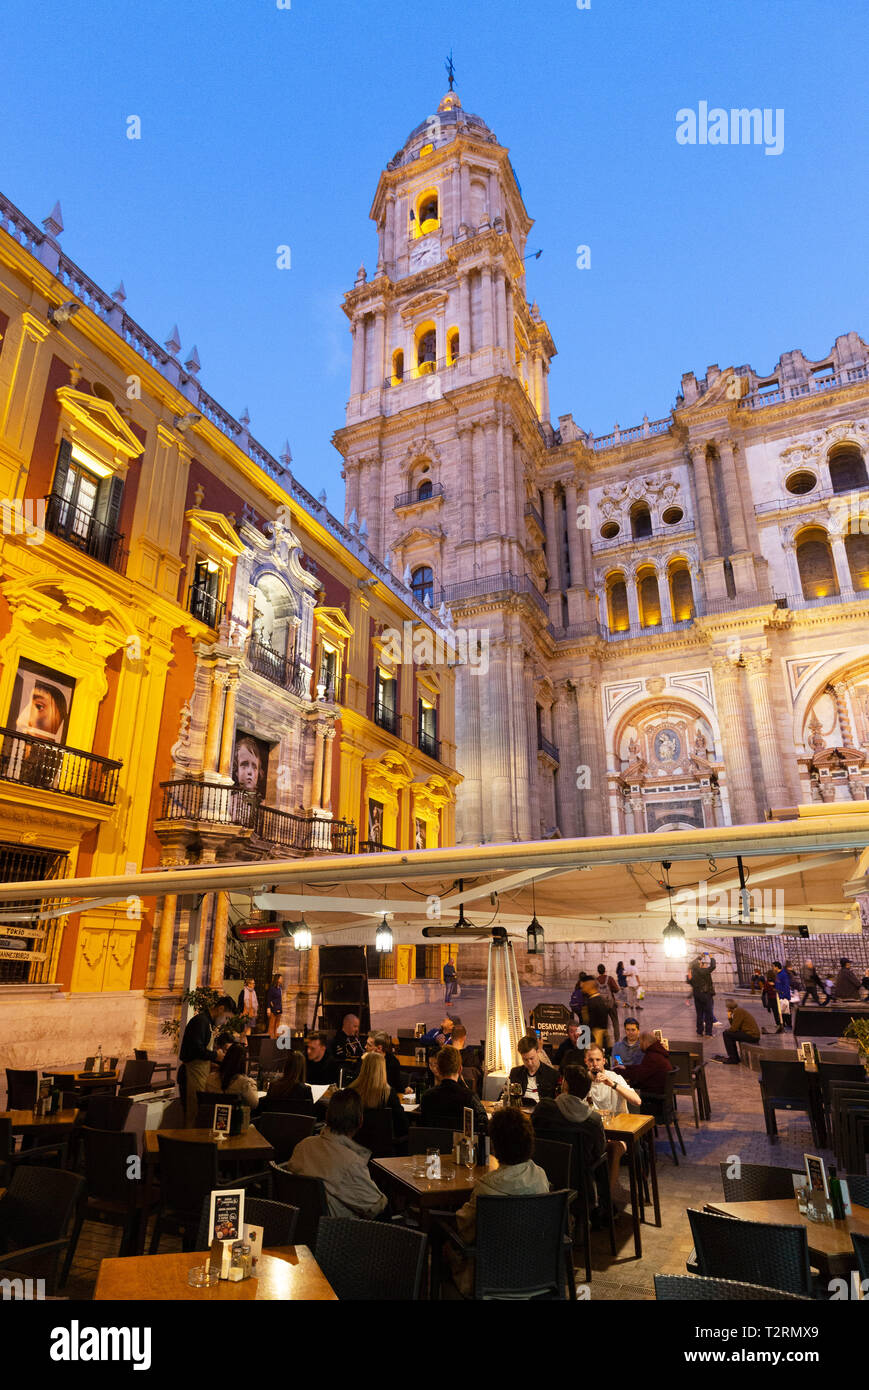 Die Kathedrale von Malaga und die Bishops Palace nachts beleuchtet, von der Plaza del Obispo, Malaga Altstadt, Andalusien Spanien gesehen Stockfoto